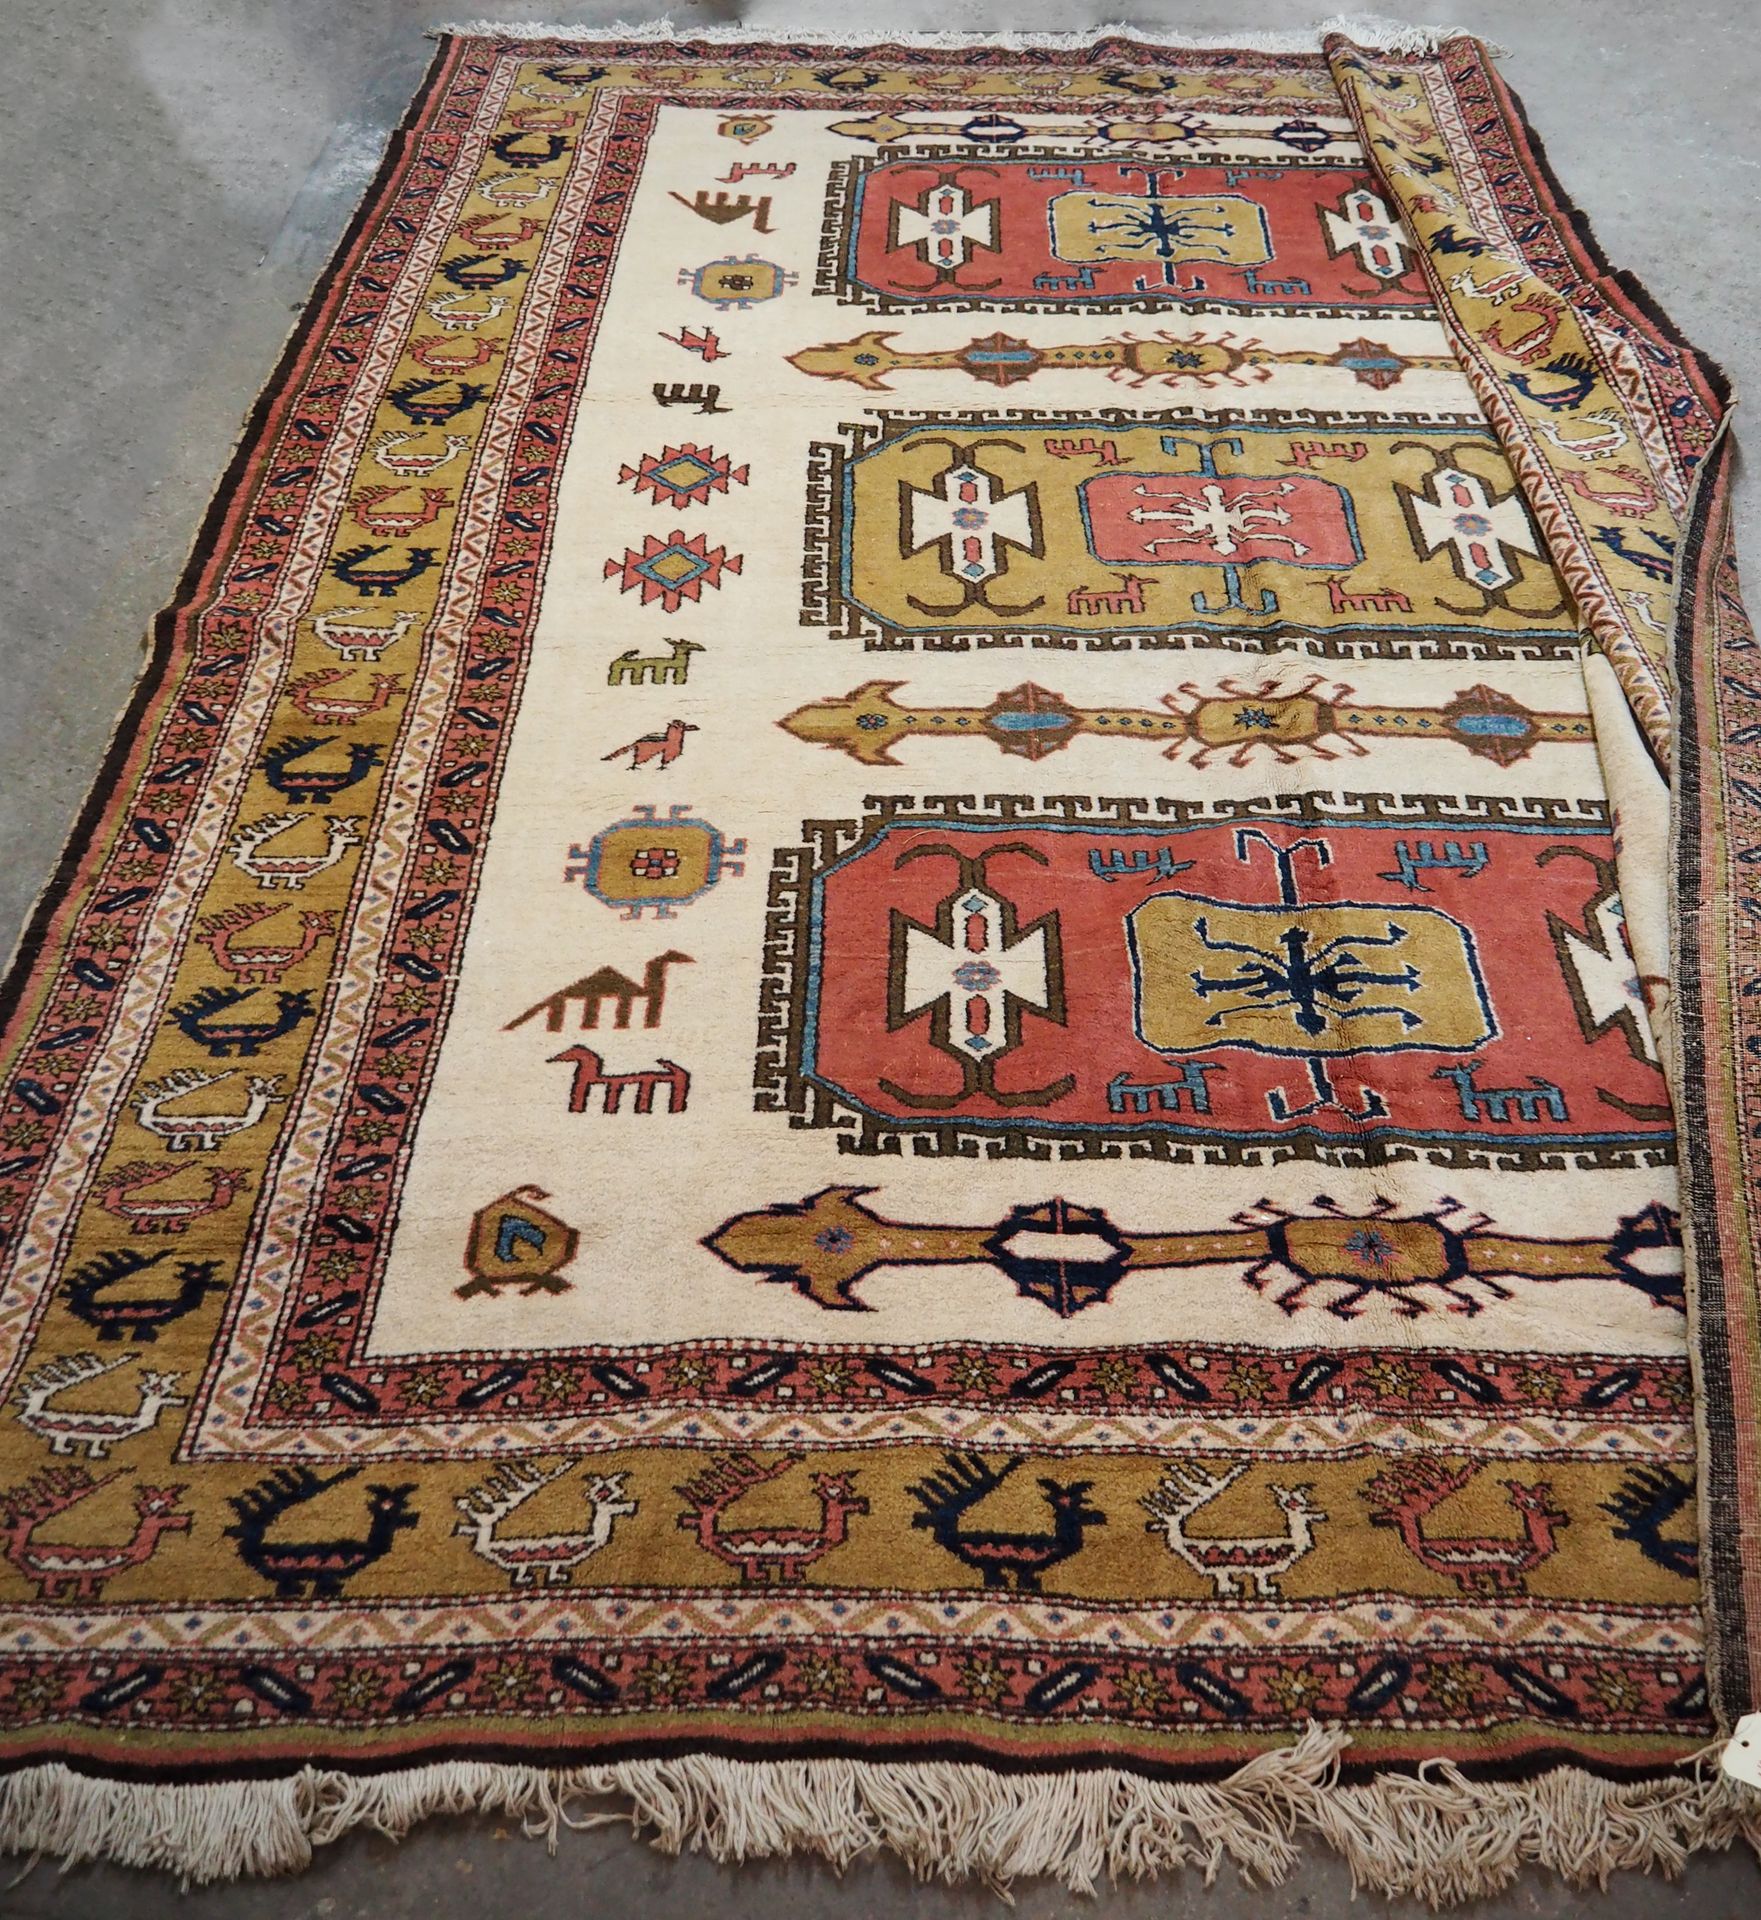 Null 重要和原始的阿德比尔 - 伊朗西北部

约1975年

尺寸：354 x 217 cm

技术特点 : 棉质基础上的羊毛丝绒

总体状况良好

让人联&hellip;